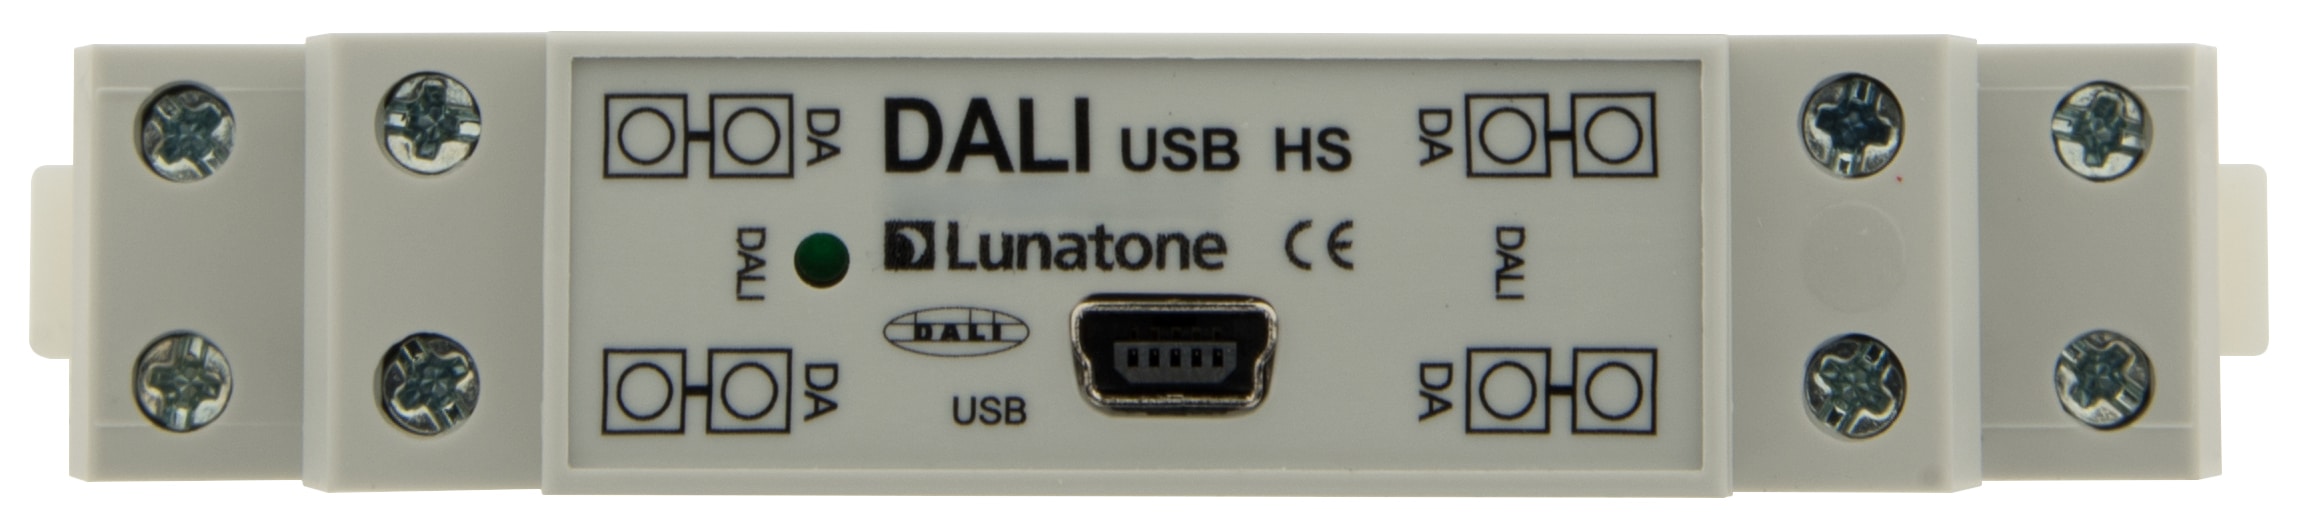 https://autled.com/daten/foto/Produktfoto_DALI-USB-Maus-Hutschienenmontage_4_v1.jpg